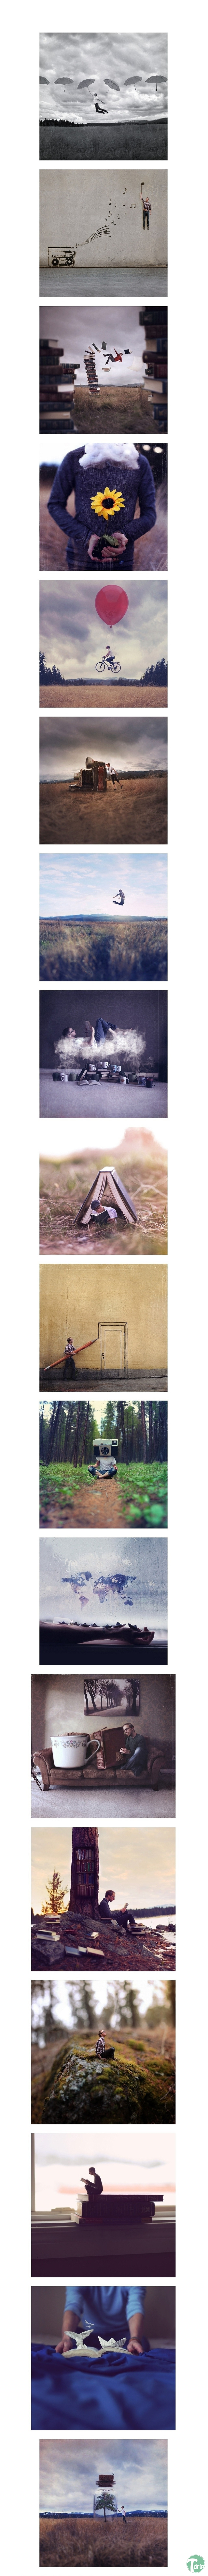 1 (7).jpg : 조 로빈슨의 초현실주의 예술사진들.JPG